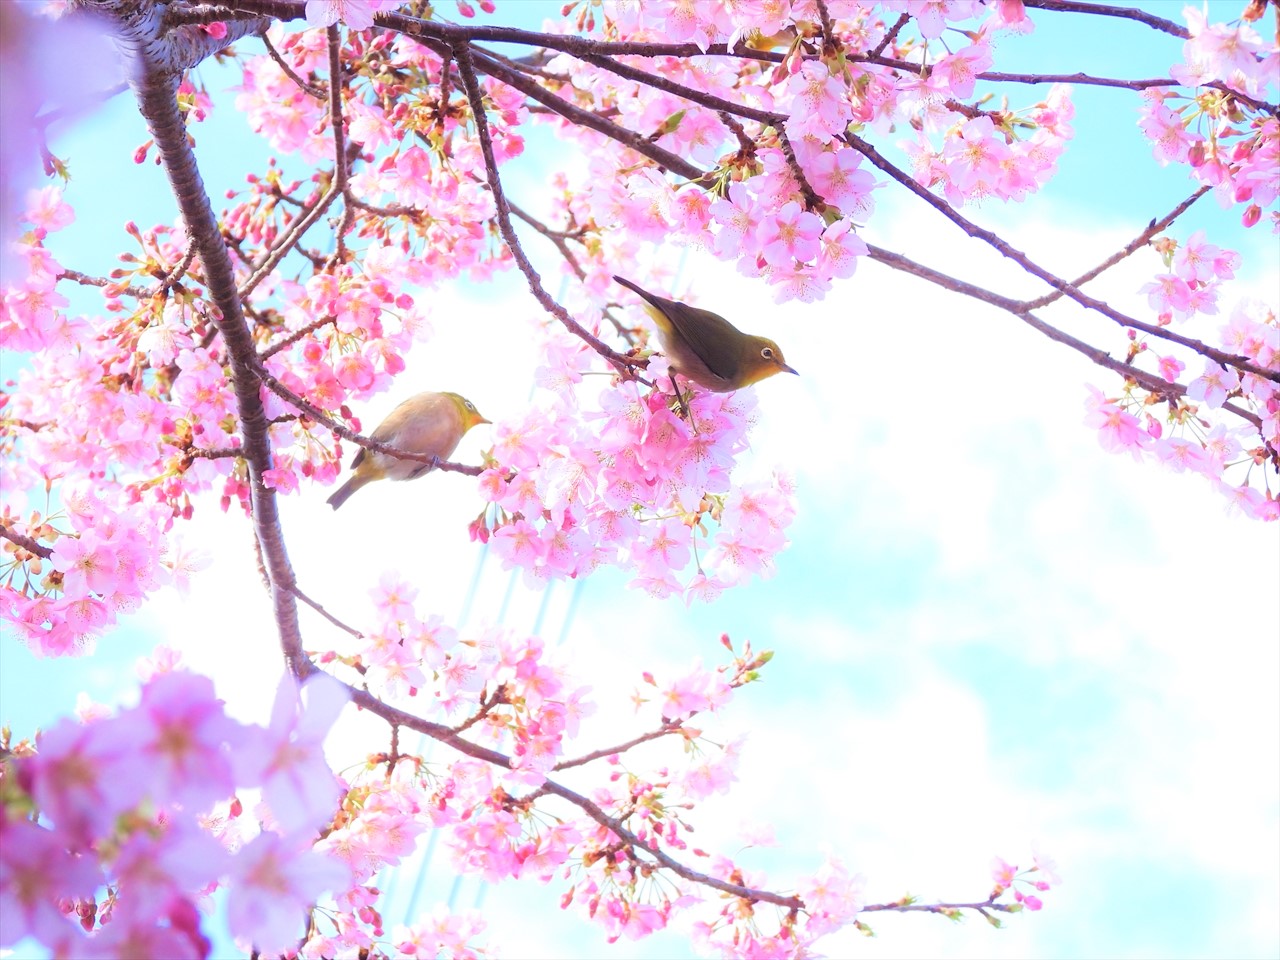 DSCN1470 (2)緋寒桜にメジロ２０２０年２月２７日AM９：４７